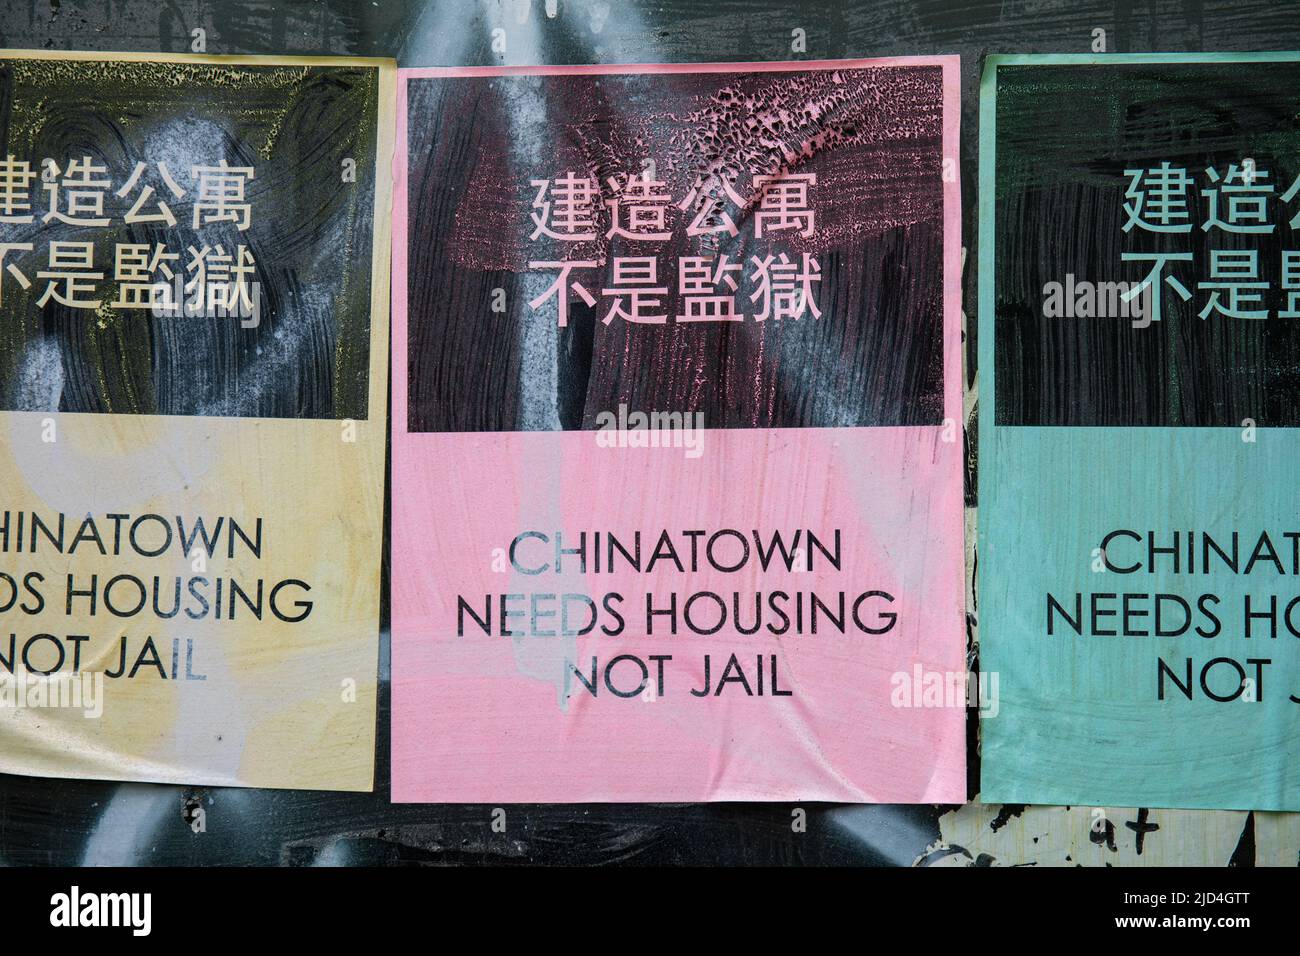 Chinatown Braucht Eine Unterkunft, Nicht Ein Gefängnis. Farbenfrohe Weizenpasta-Poster in Chinatown, New York City, Vereinigte Staaten von Amerika. Stockfoto